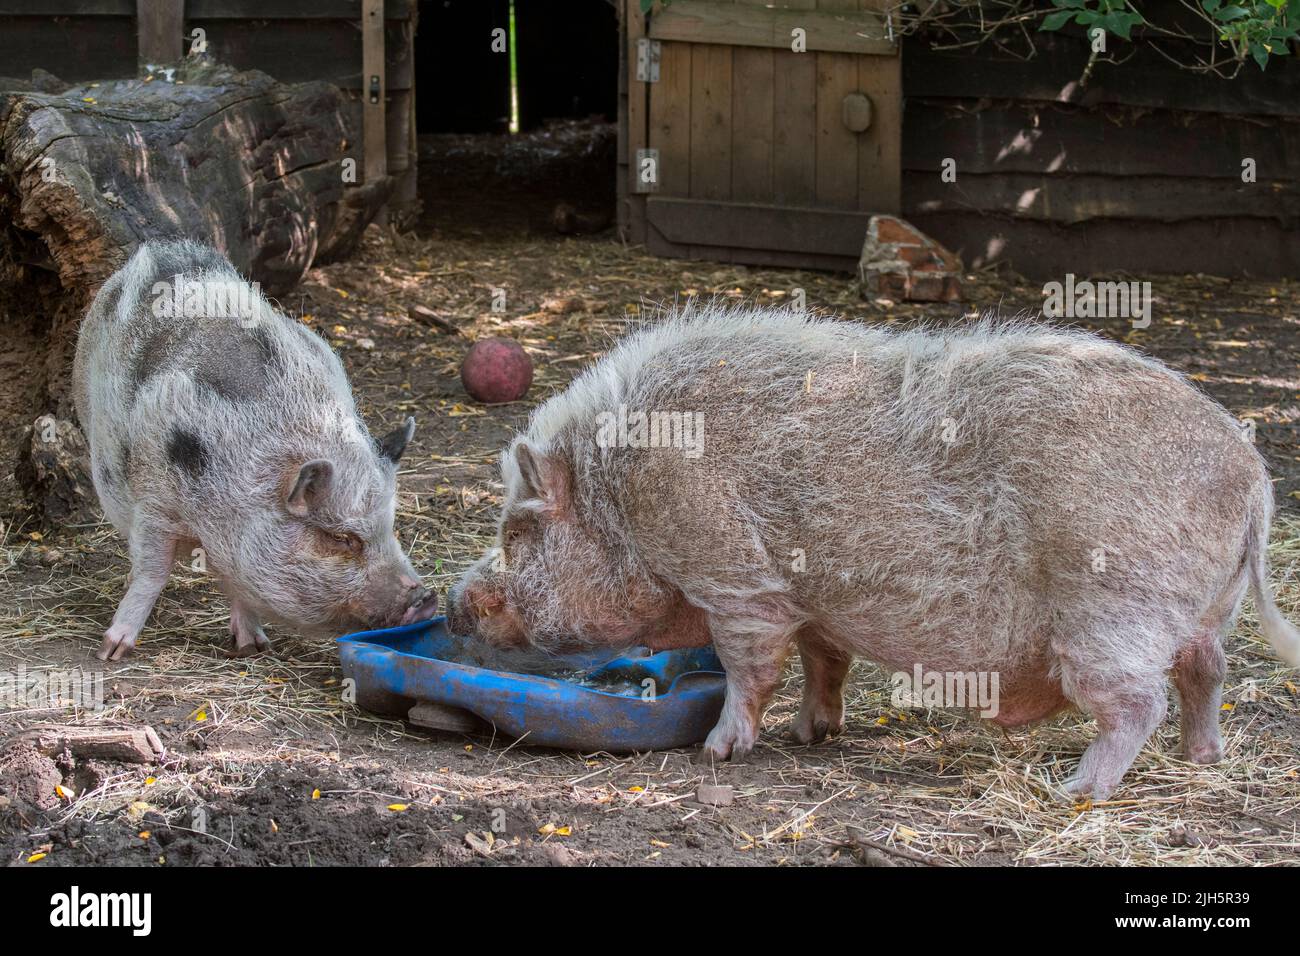 Deux cochons vietnamiens Pot-bellied / cochon Lon I, race vietnamienne de cochon domestique miniature mangeant au zoo pour enfants / ferme pour enfants Banque D'Images